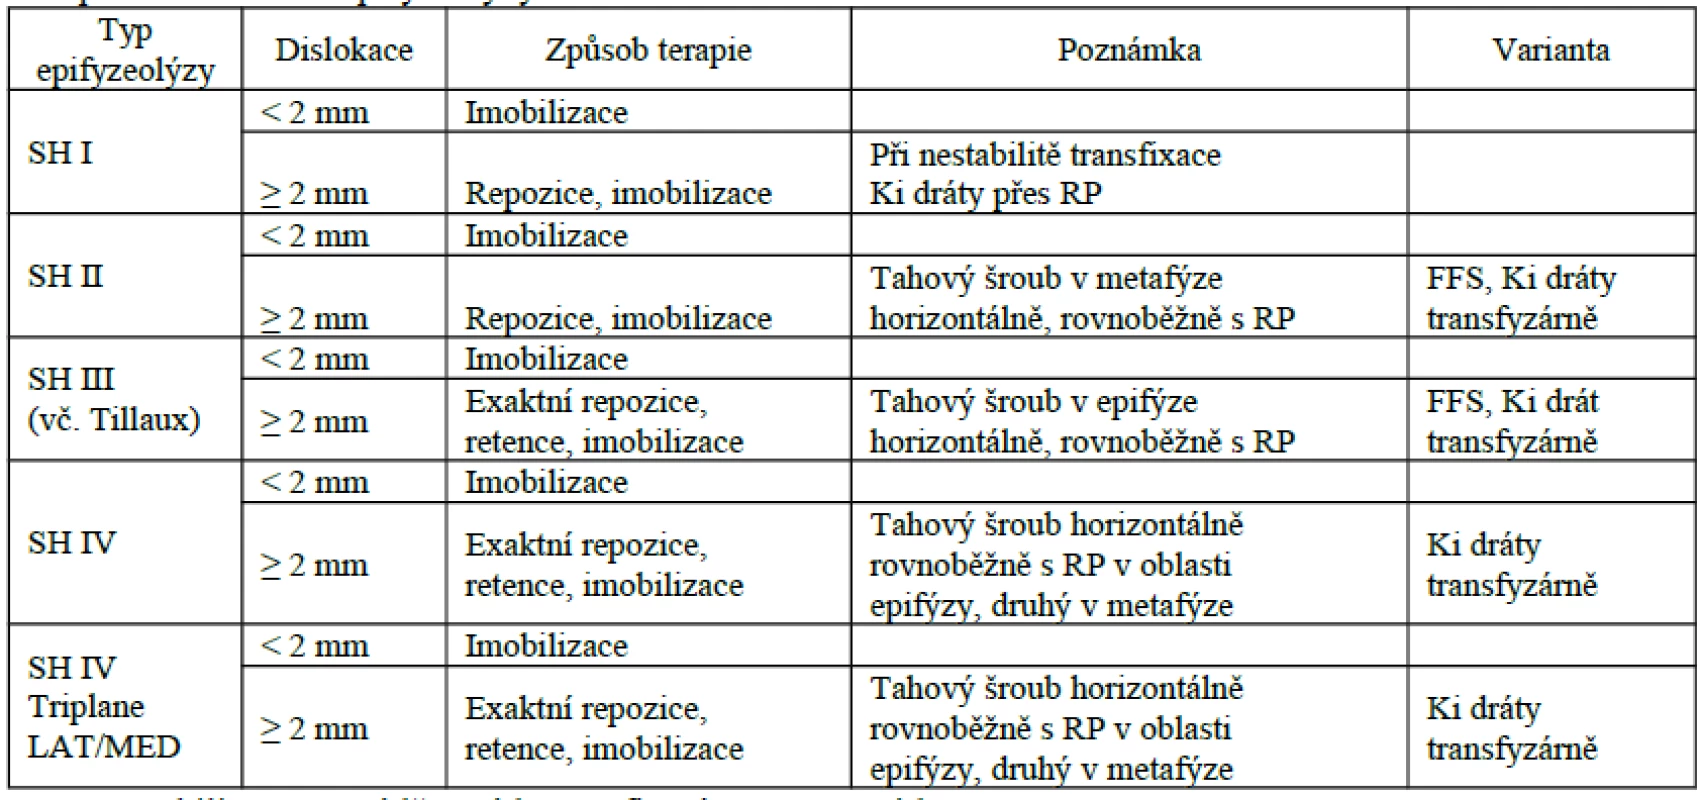 Terapeutické schéma epifyzeolýzy distální tibie